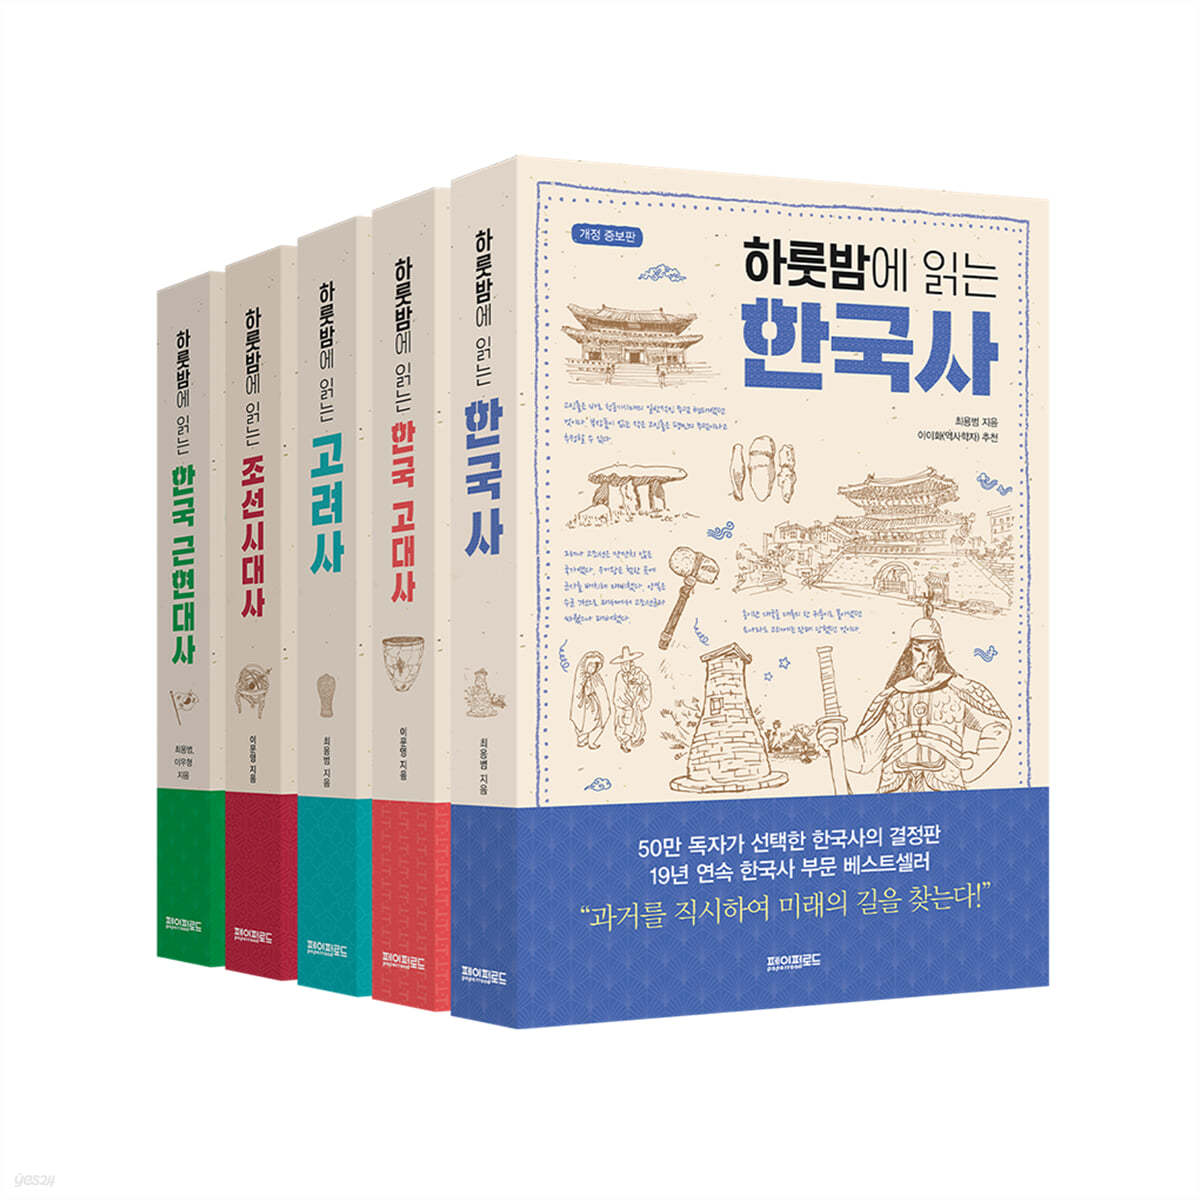 페이퍼로드 하룻밤에 읽는 한국사 5권 세트